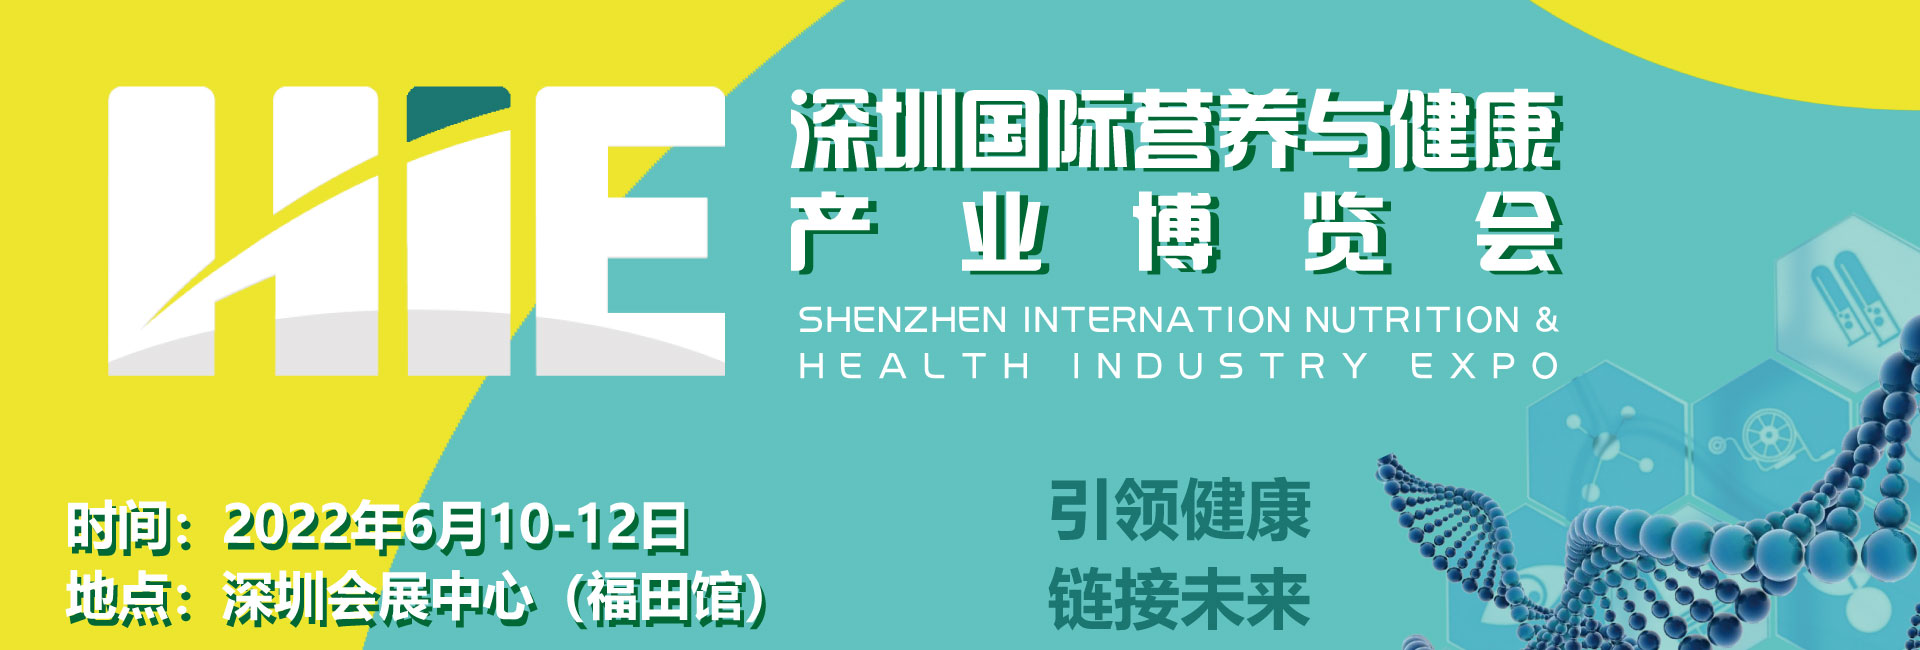 2022第十二届深圳国际营养与健康产业博览会展览会议承办单位深圳福寿康养科技有限公司